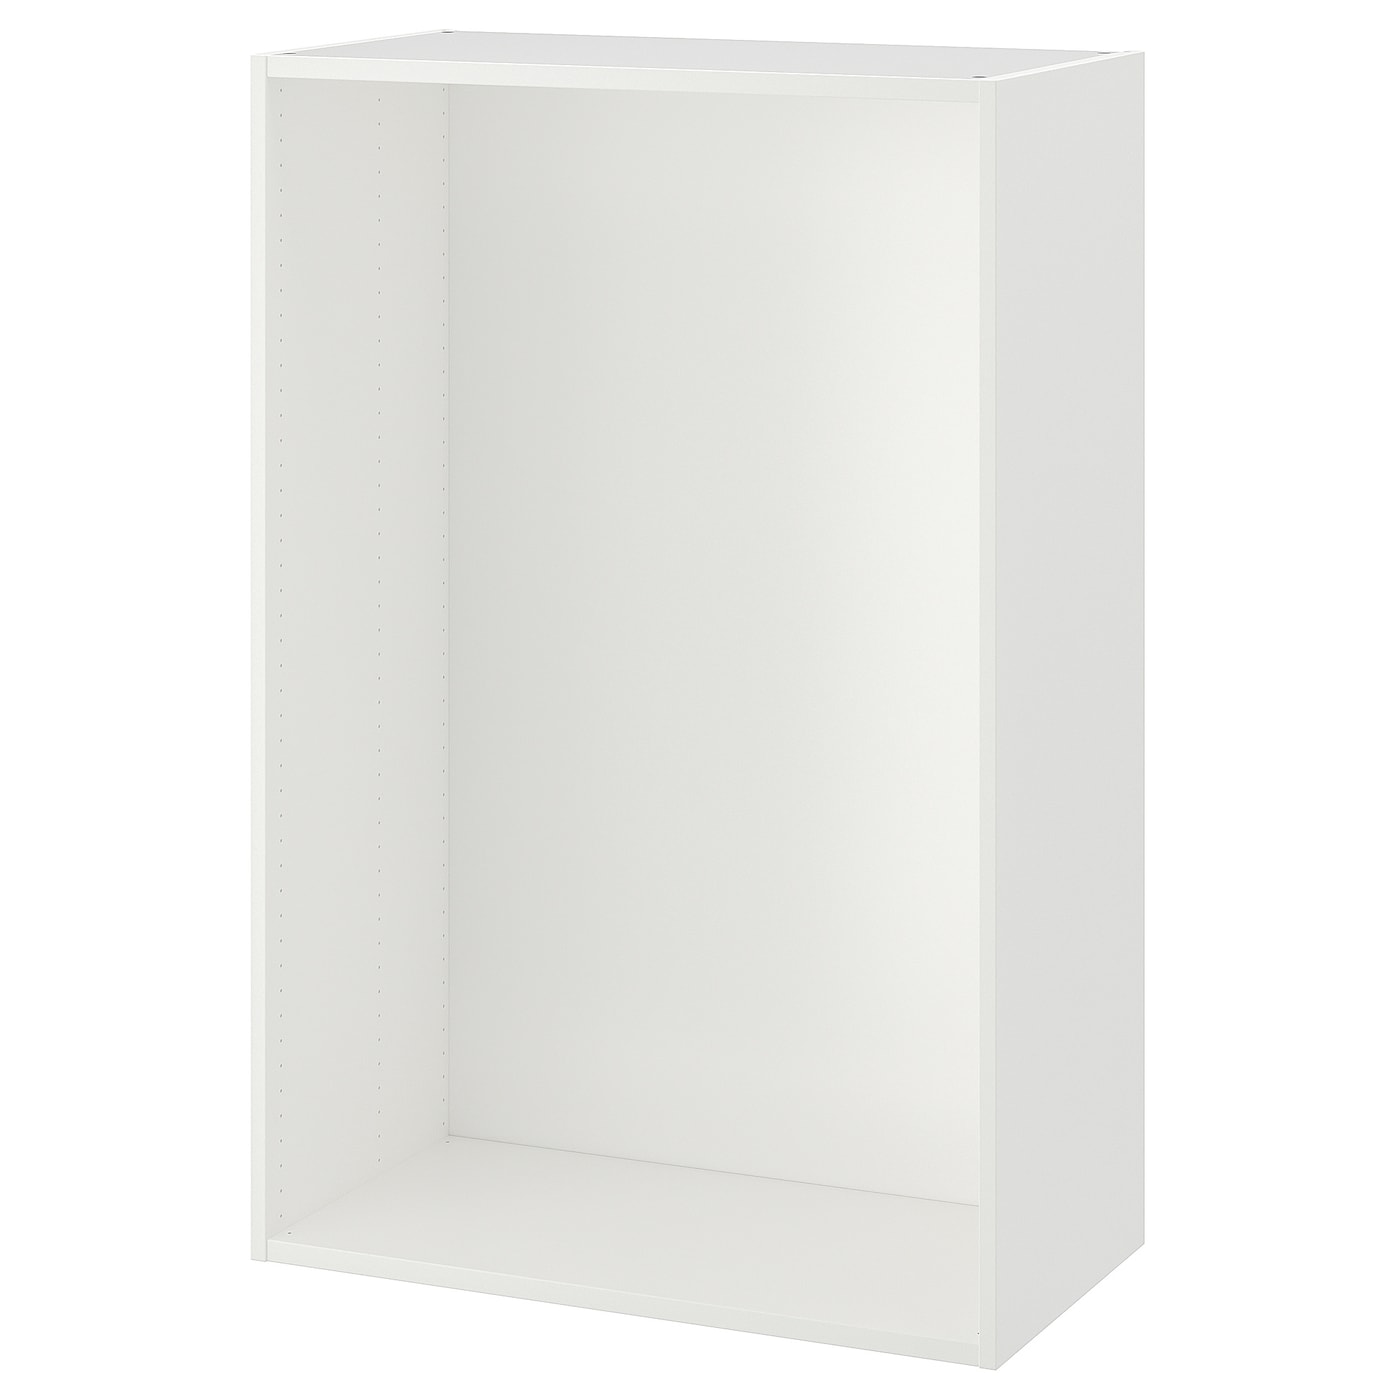 Каркас гардероба - PLATSA IKEA/ПЛАТСА ИКЕА, 40х80х120 см, белый